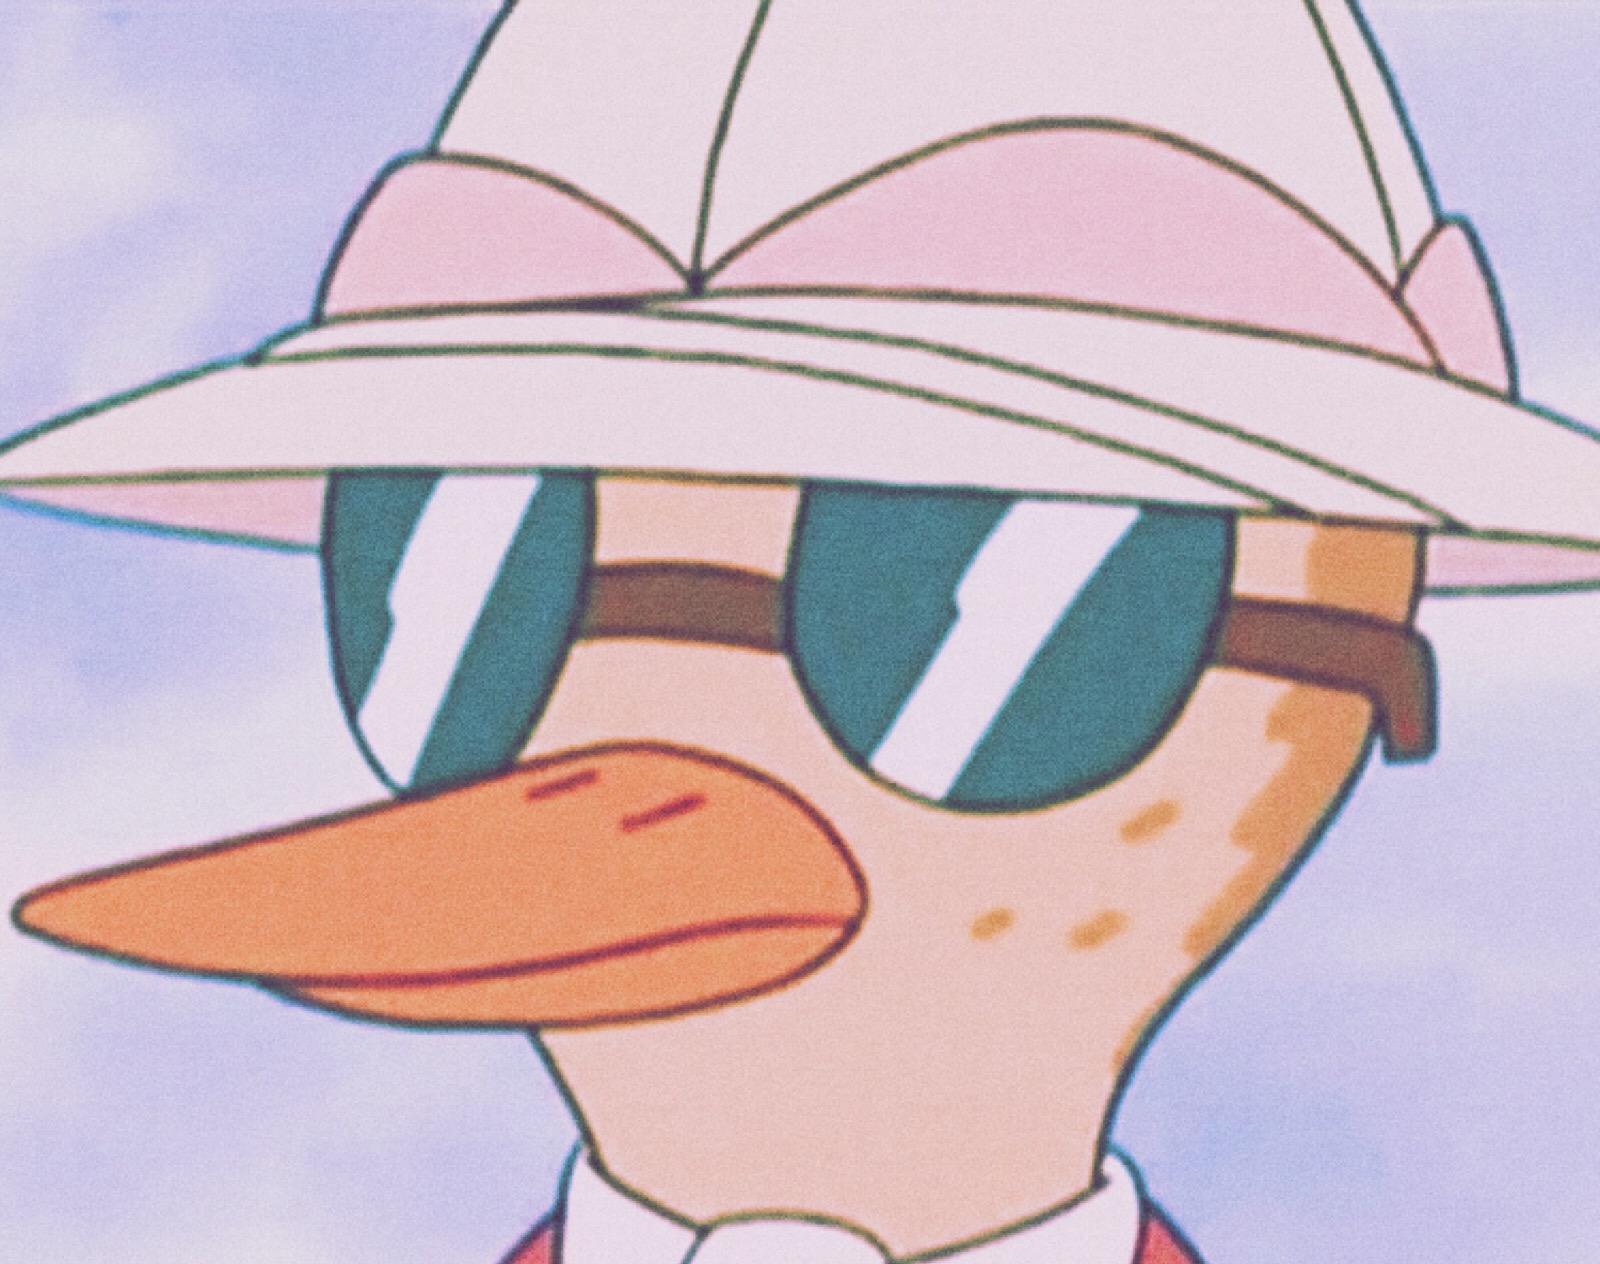 鸭子侦探是一部以破案为主题的动画片,由中国和加拿大联合制作,中方的